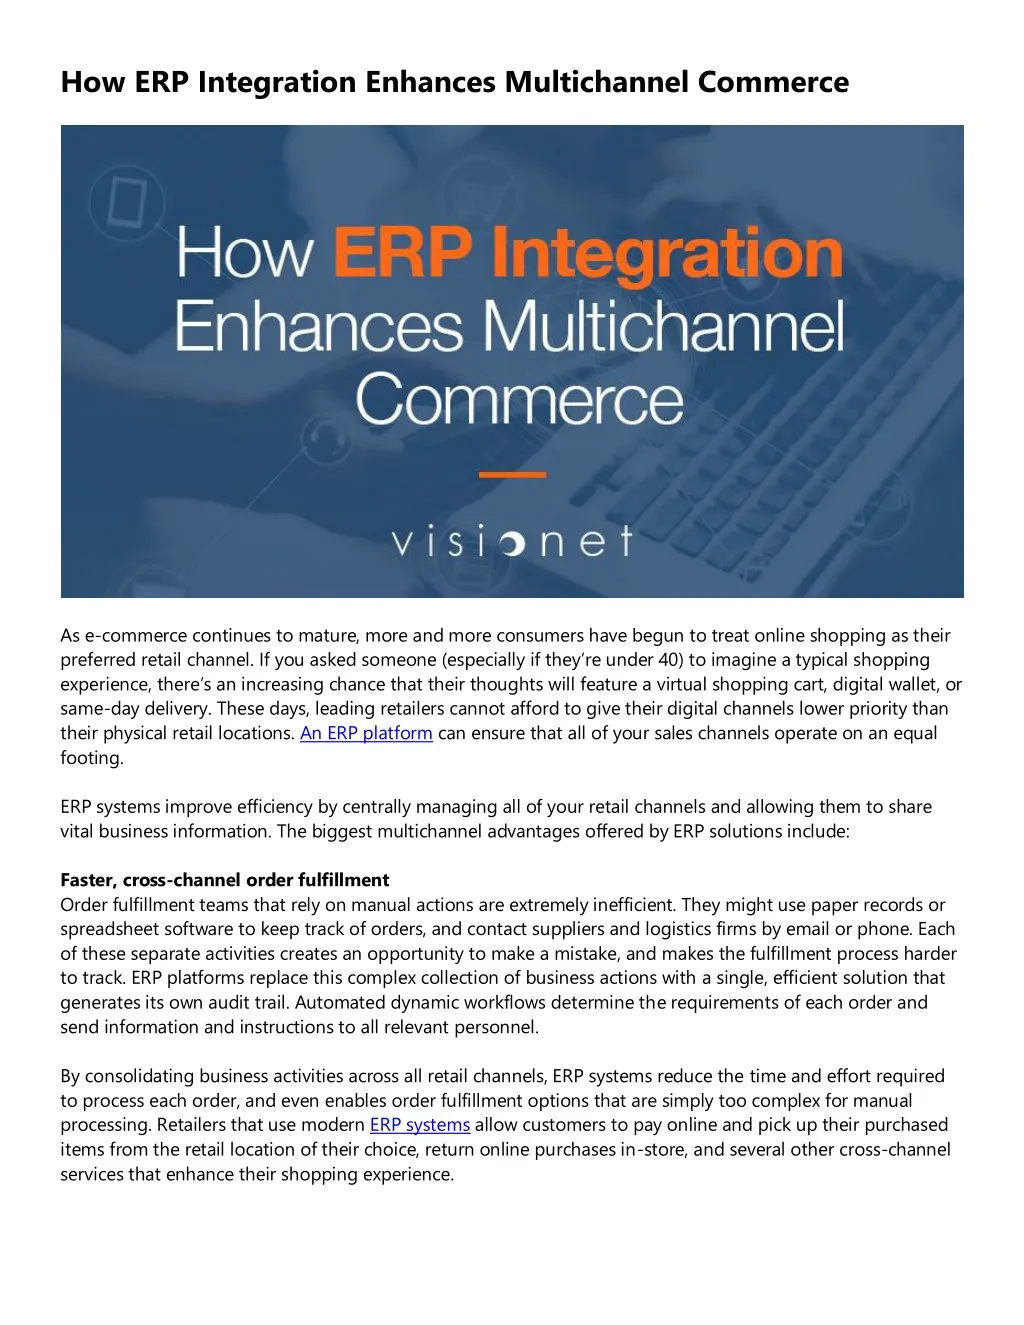 how erp integration enhances multichannel commerce